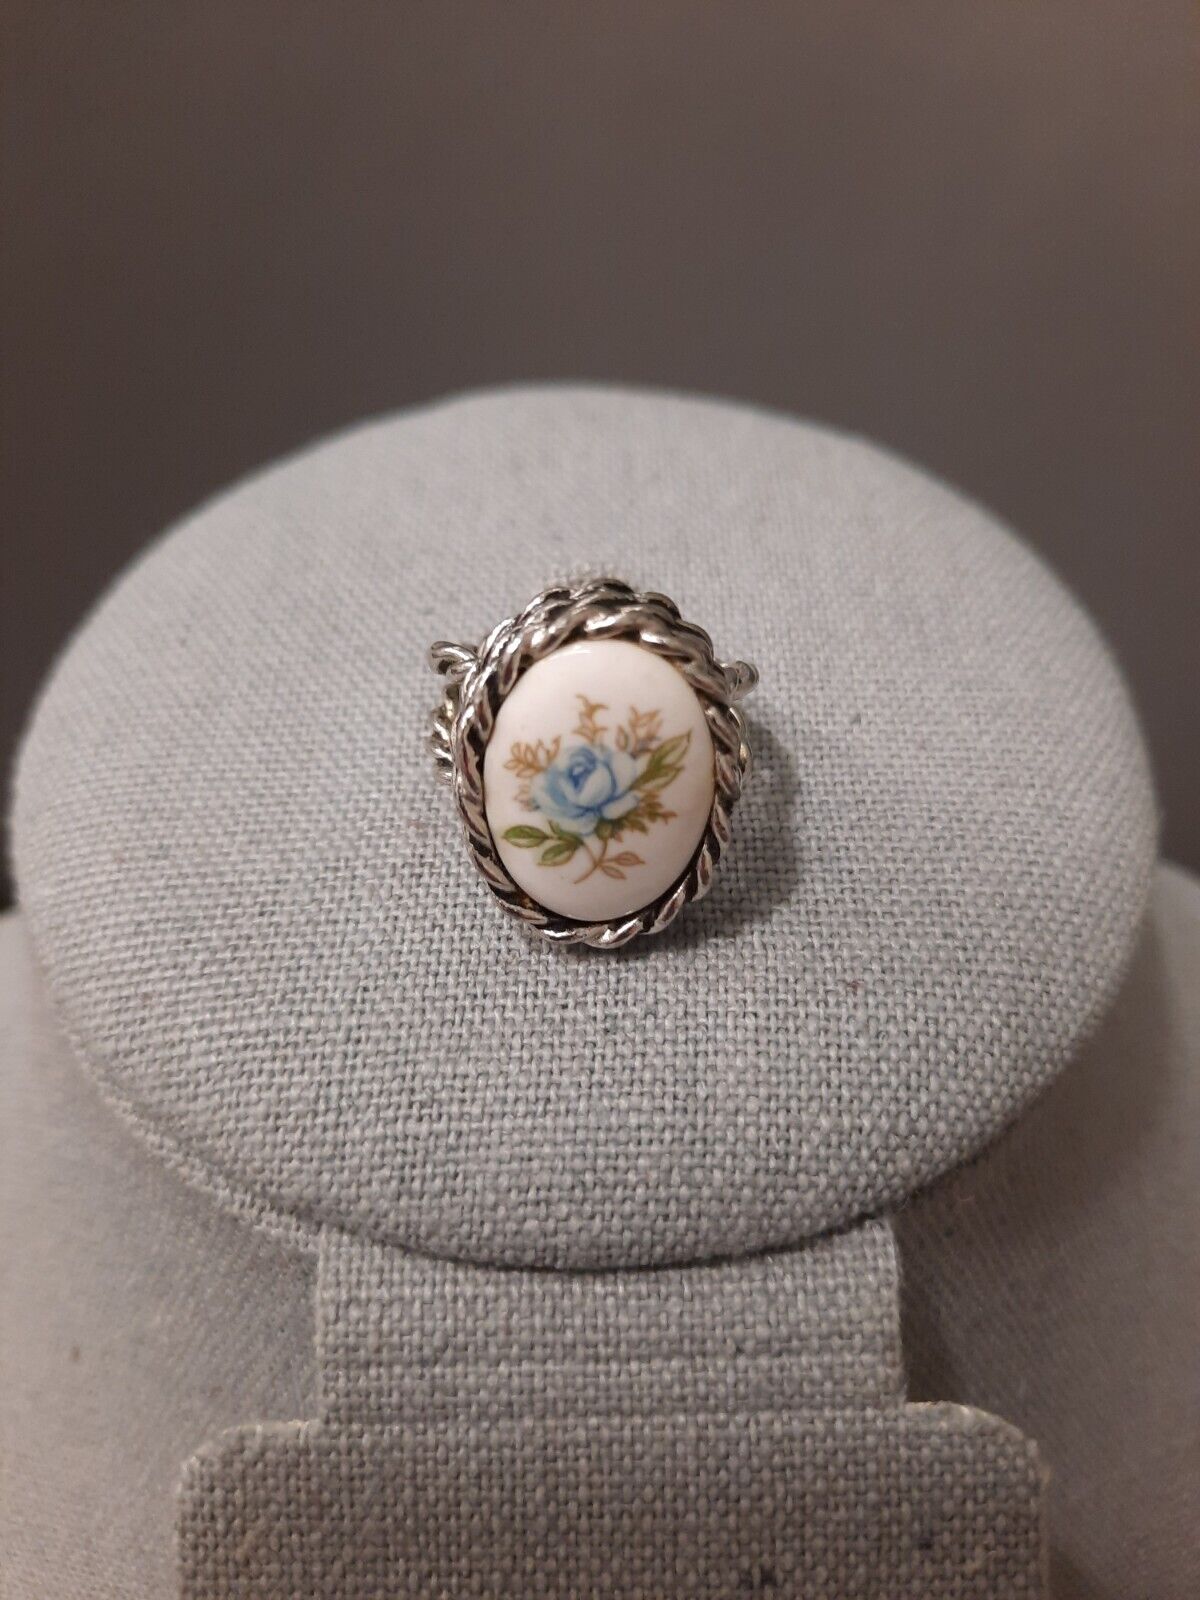 Verheugen Vertrouwen op Arbitrage Vintage Sarah Coventry Ring Blue Cabbage Rose Silver Adjustable | eBay